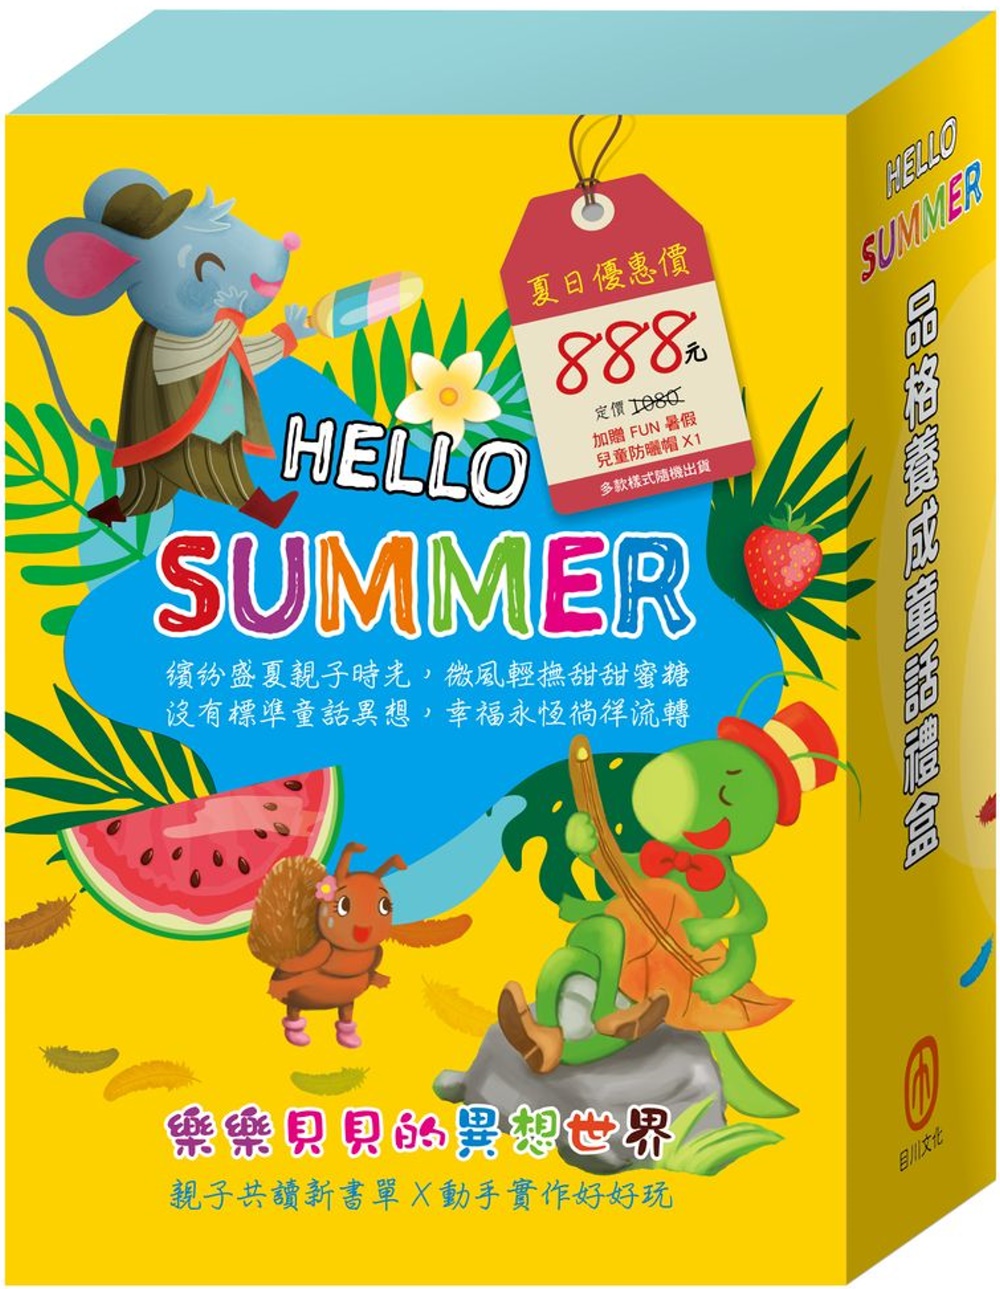 【HELLO SUMMER】品格養成童話禮盒：《城市老鼠與鄉下老鼠》、《烏鴉的彩色羽毛》、《蟋蟀與螞蟻》